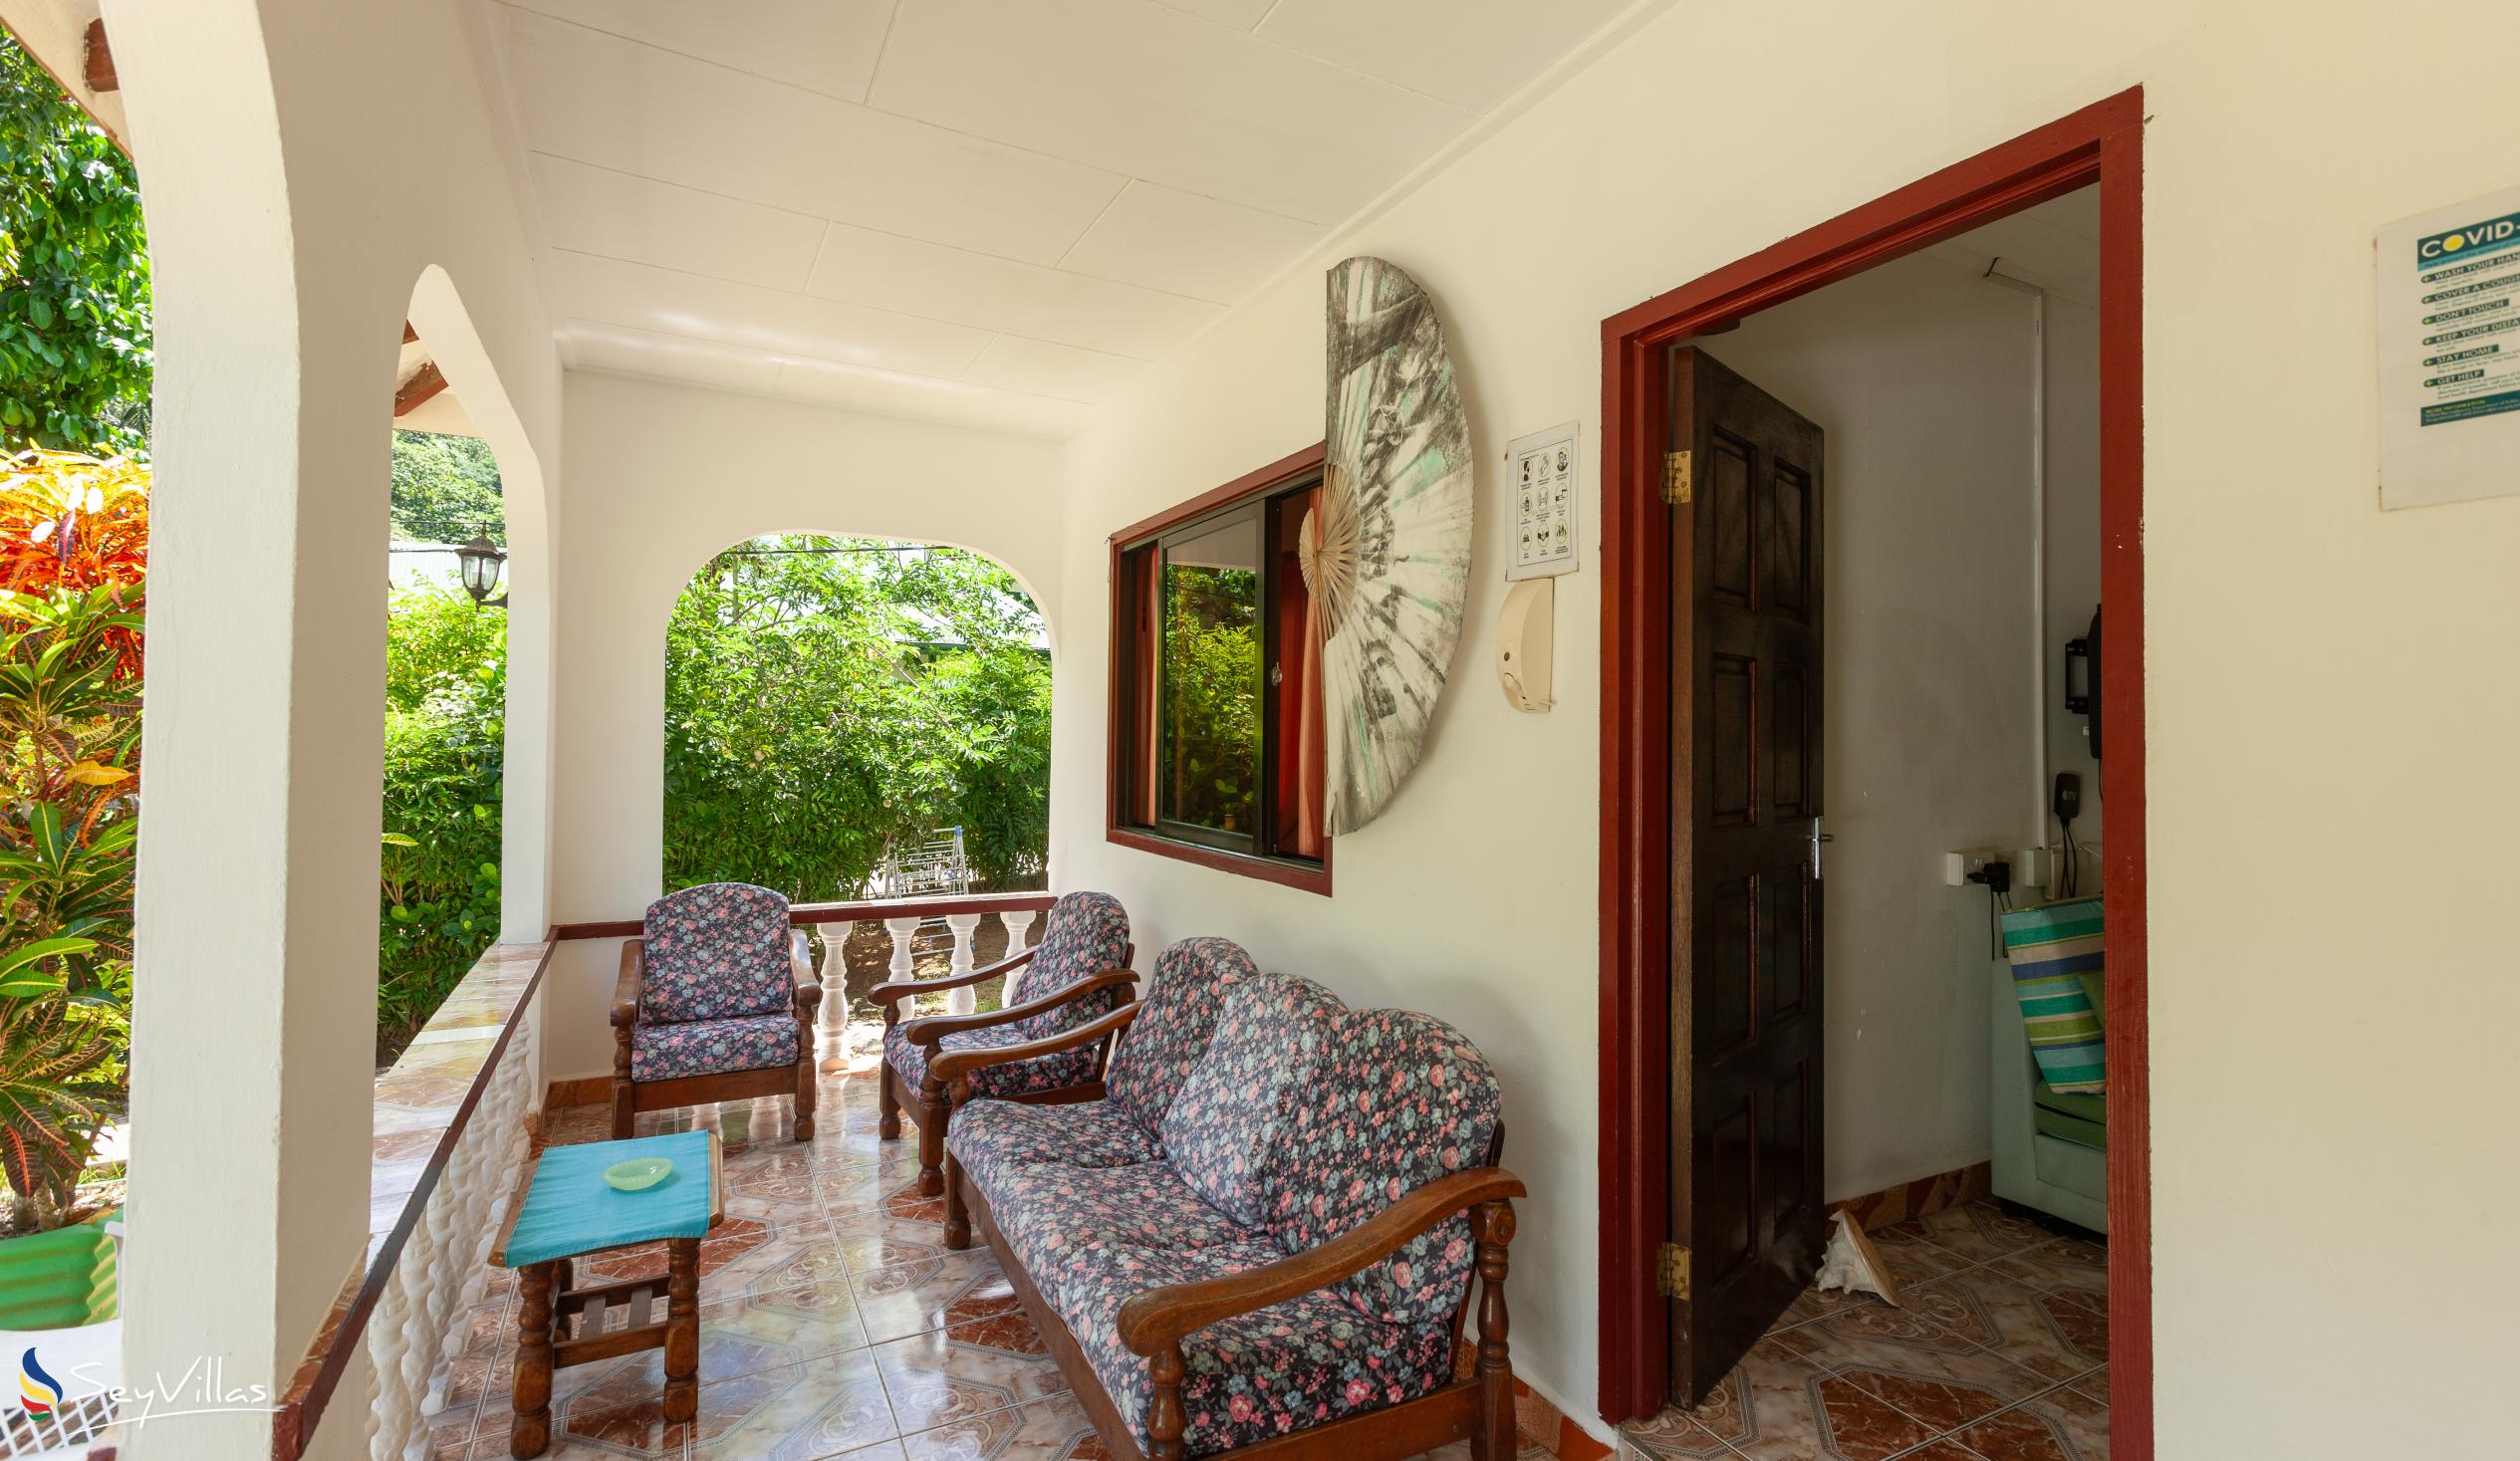 Photo 36: Dan Kazou - 2-Bedroom Apartment - La Digue (Seychelles)